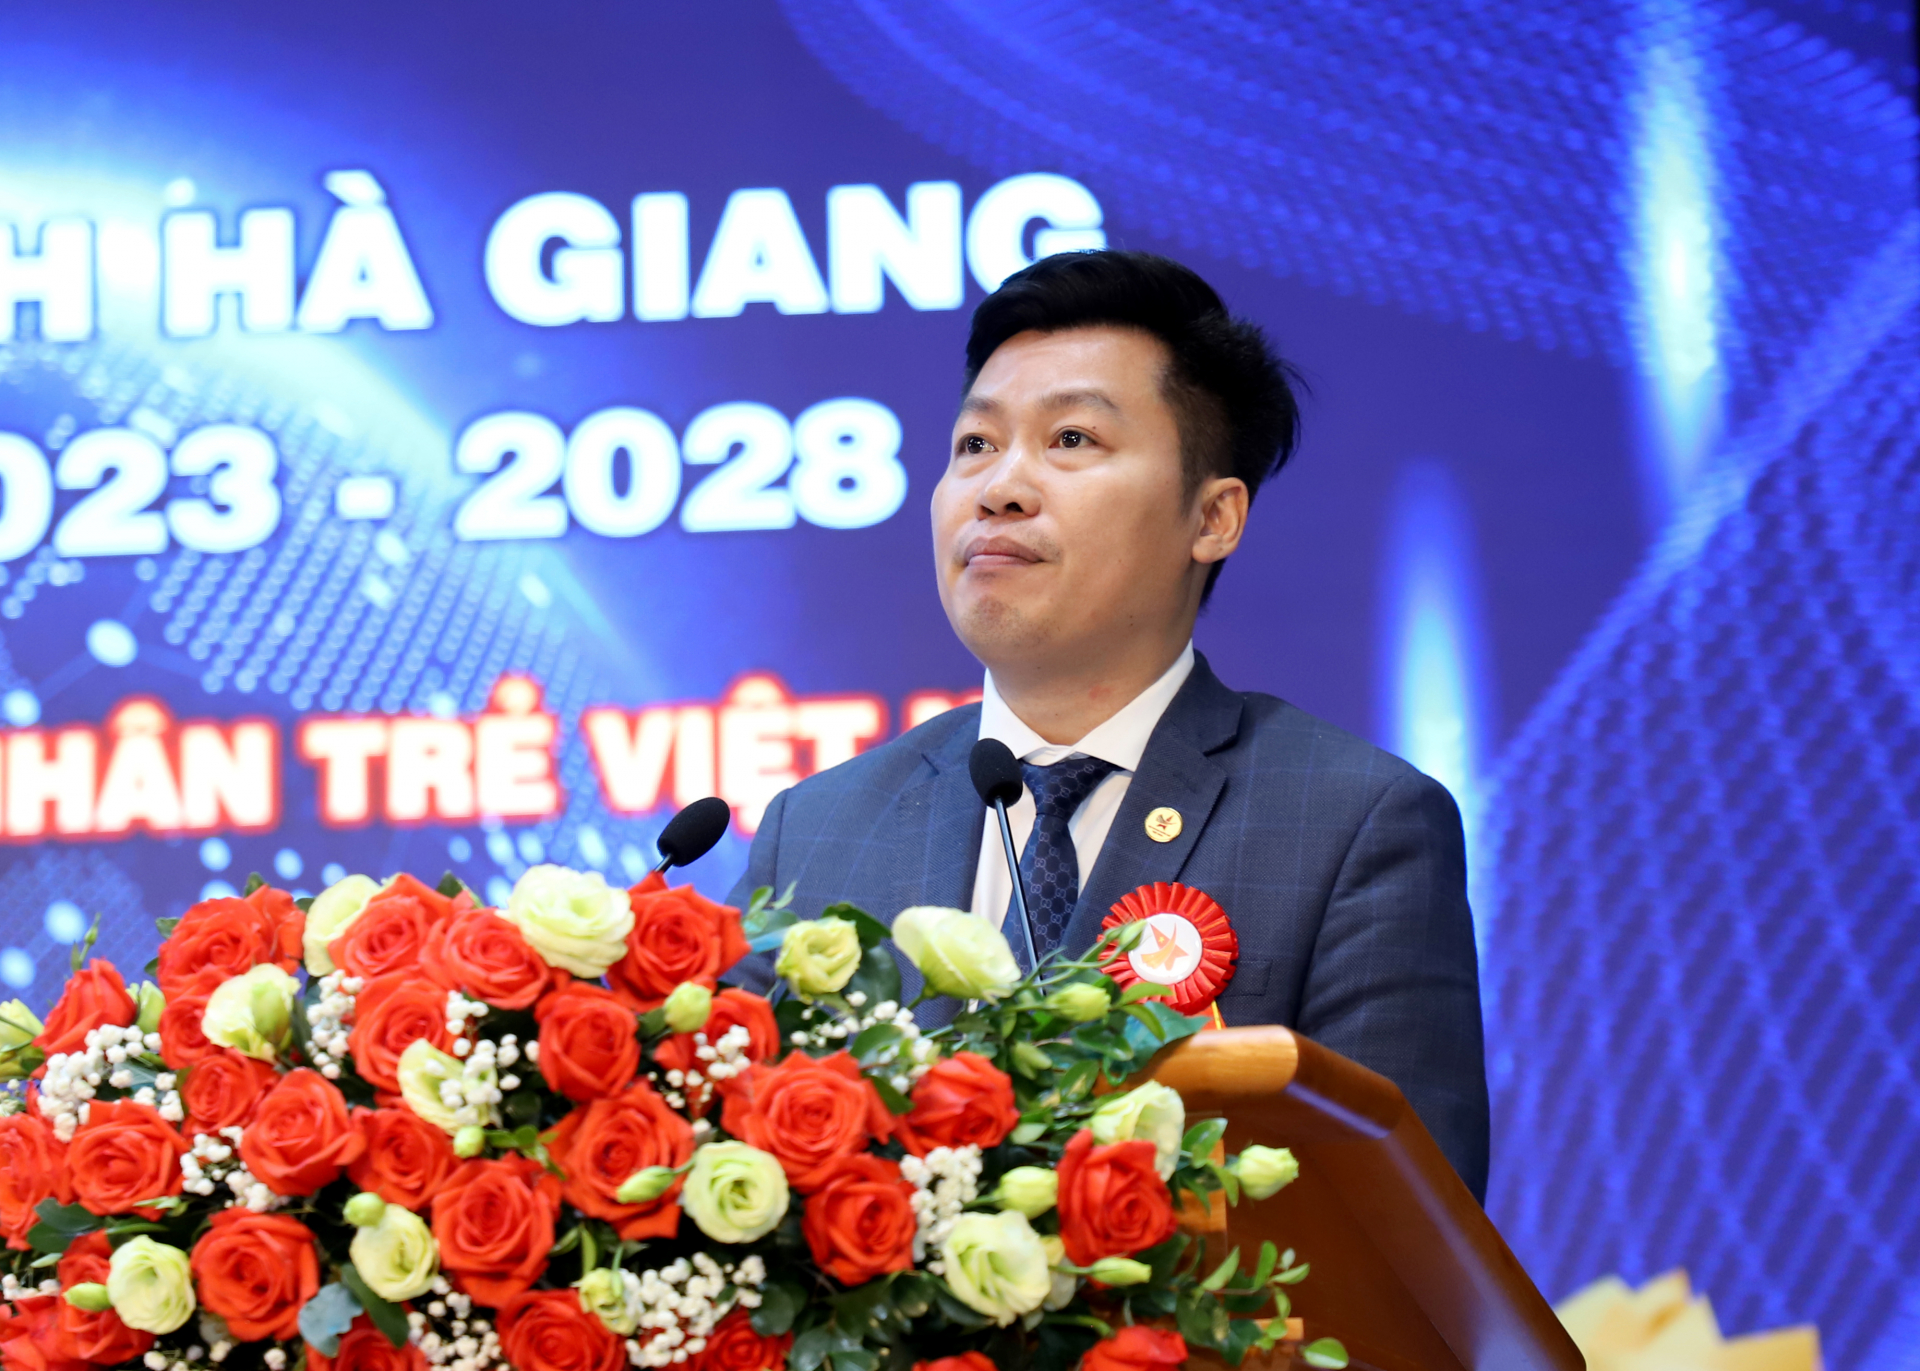 Phó Chủ tịch T.Ư Hội Doanh nhân trẻ Việt Nam Hoàng Công Đoàn phát biểu tại đại hội.